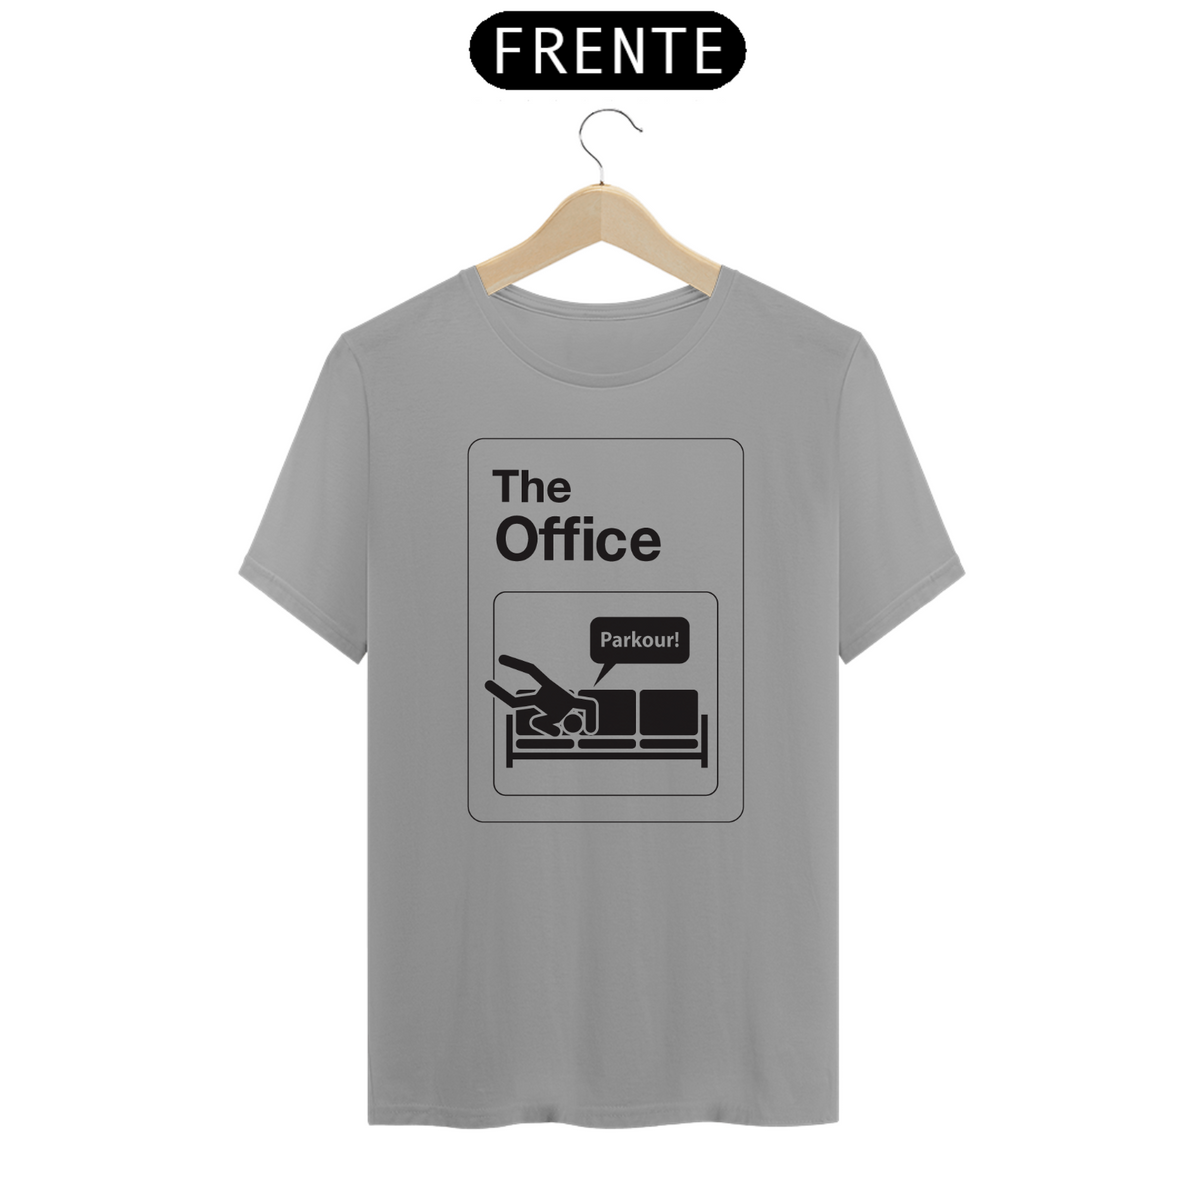 Nome do produto: The Office: Parkour (cores claras)